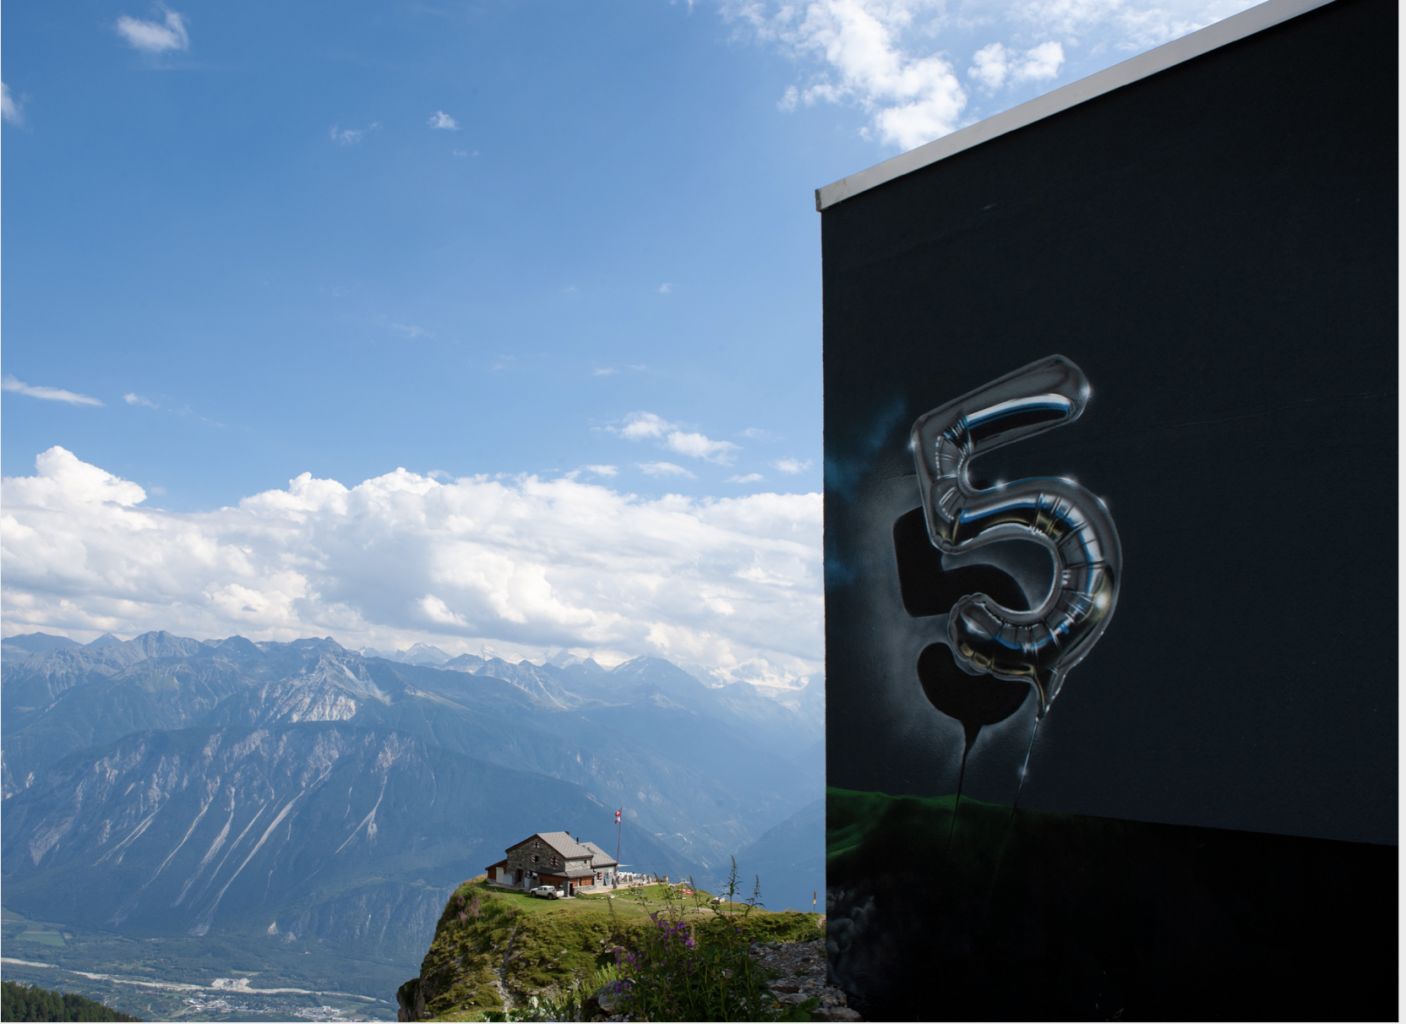 An den Fassaden der Gebäude aus den 1970er-Jahren und an den Skiliftanlagen 34 Werke von nationalen und internationalen Kunstschaffenden zu bewundern gibt, Wallis, Schweiz